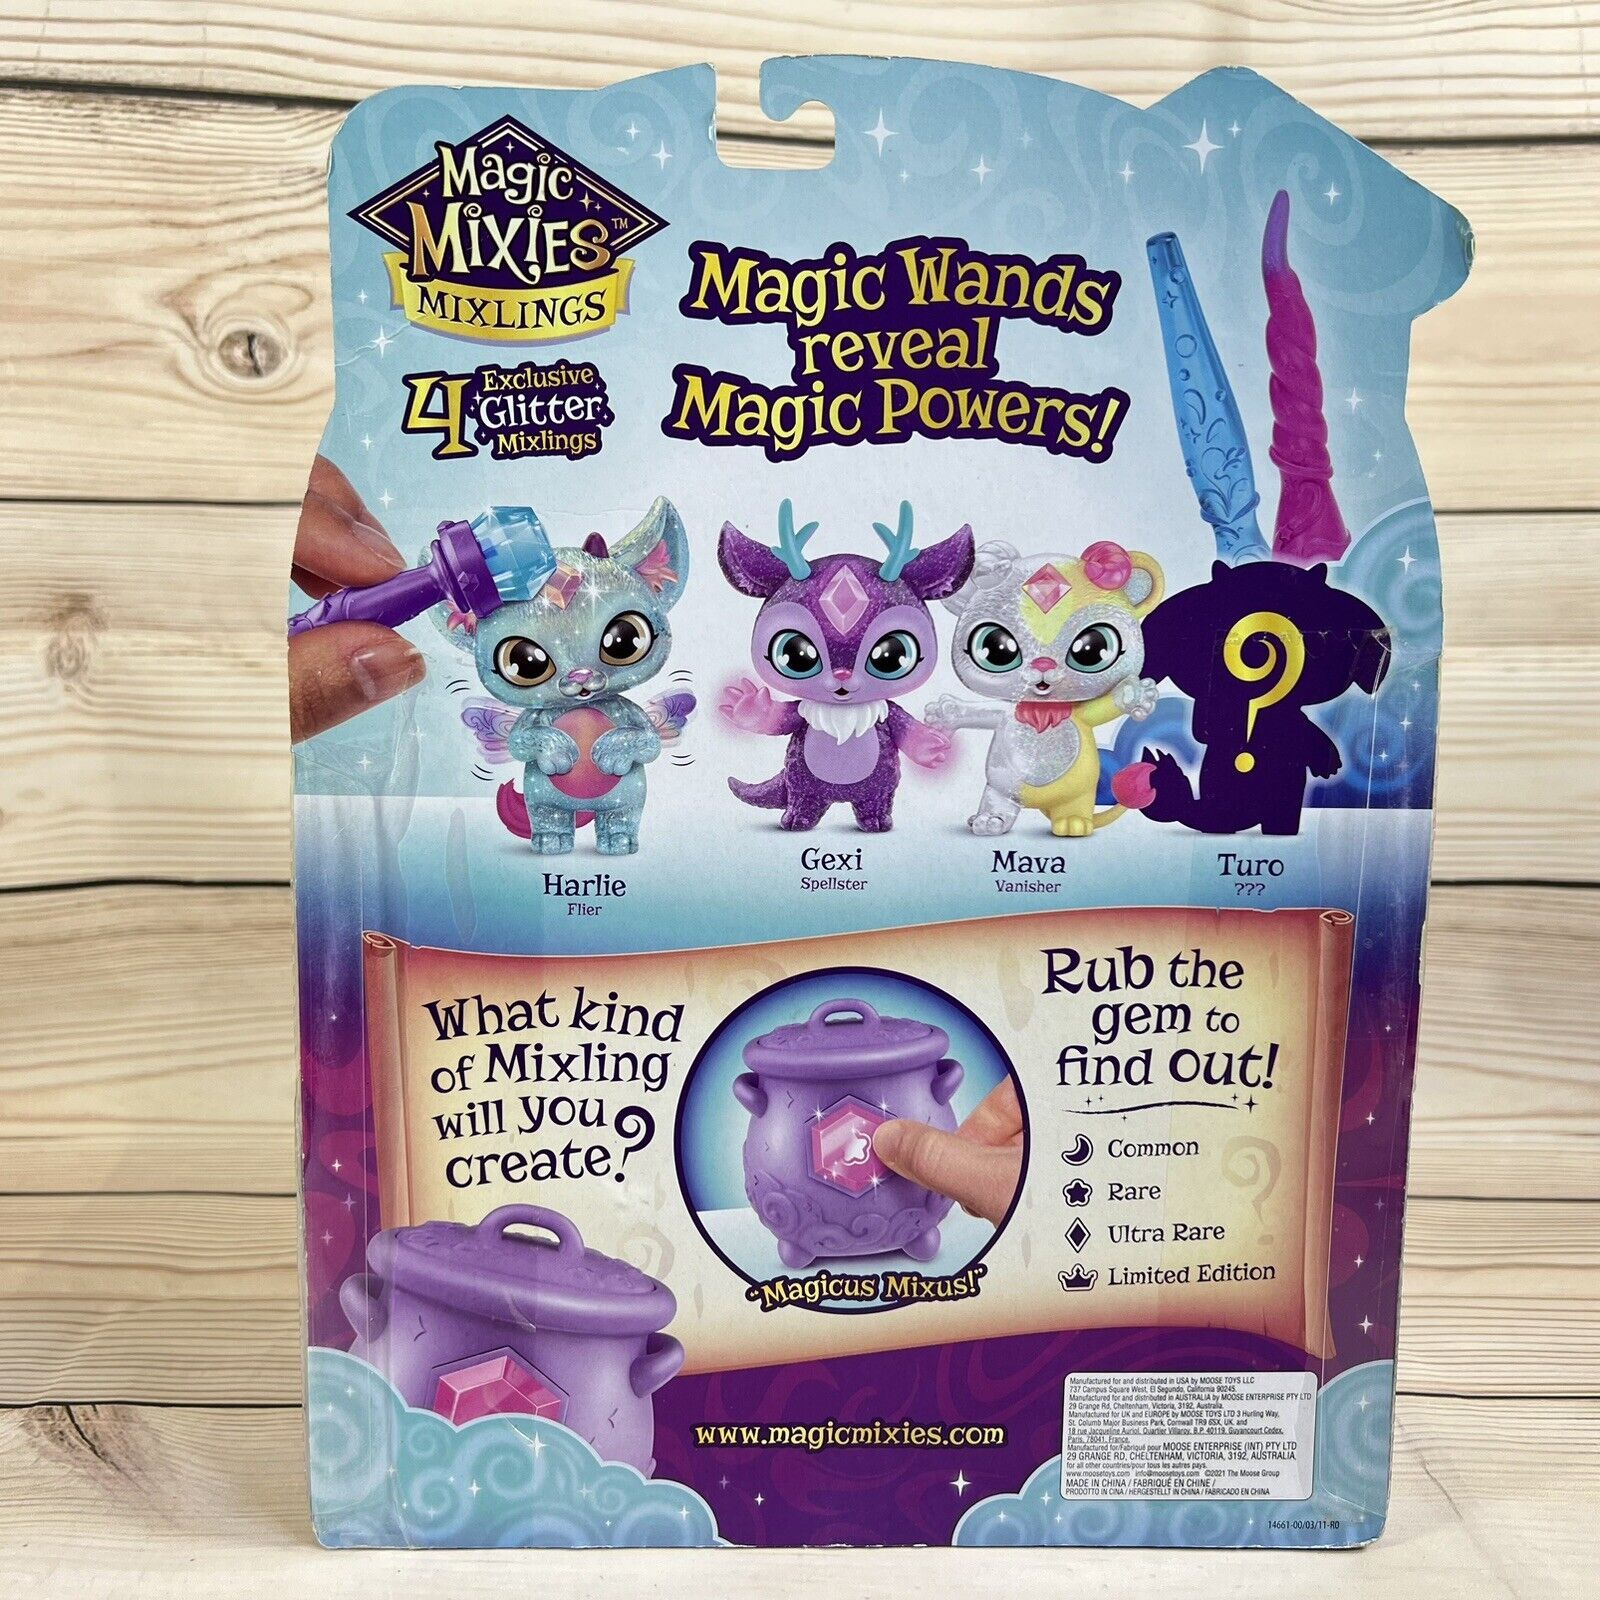 Magic Mixies Mixlings Shimmer Magic Mega 4 Pack, Magic Wand